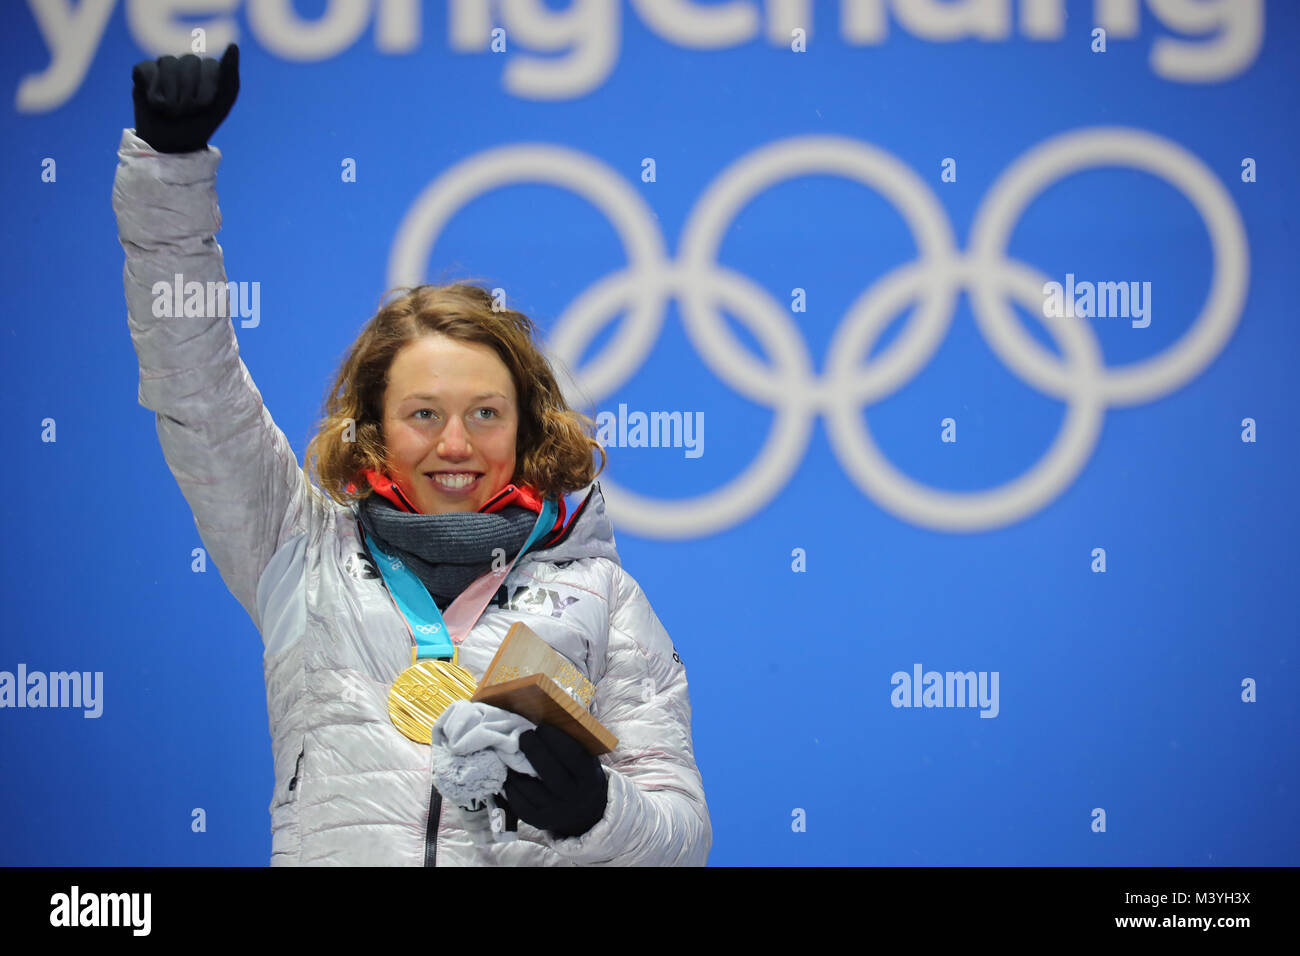 Pyeongchang, Corea del Sur. 13 Feb, 2018. Laura Dahlmeier biathlete alemana celebra su segunda medalla de oro en los Juegos Olímpicos de Invierno de Pyeongchang, Corea del Sur, 13 de febrero de 2018. Crédito: Michael Kappeler/dpa/Alamy Live News Foto de stock